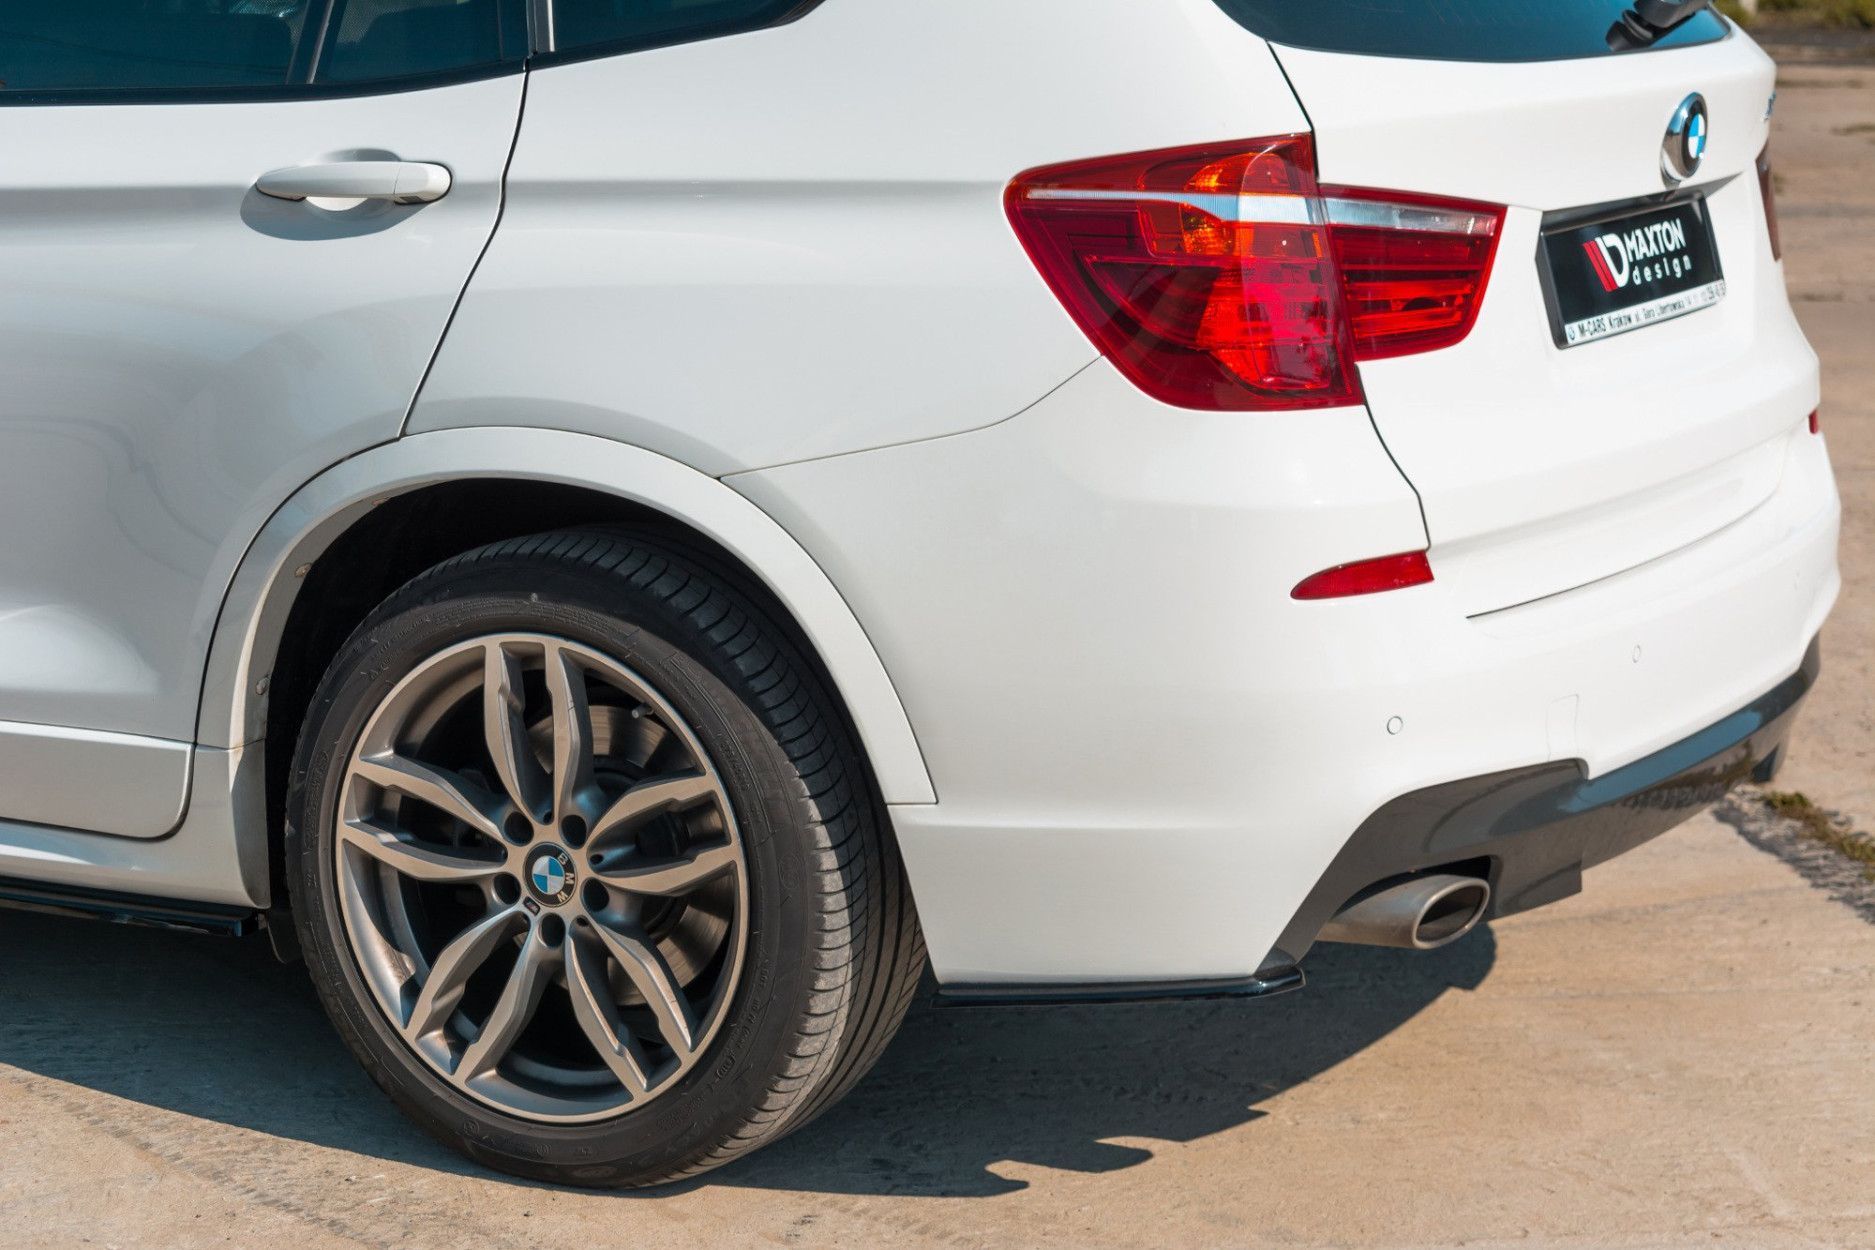 Maxtondesign Frontlippe für BMW X3 F25 mit M-Paket Facelift schwarz  hochglanz - online kaufen bei CFD